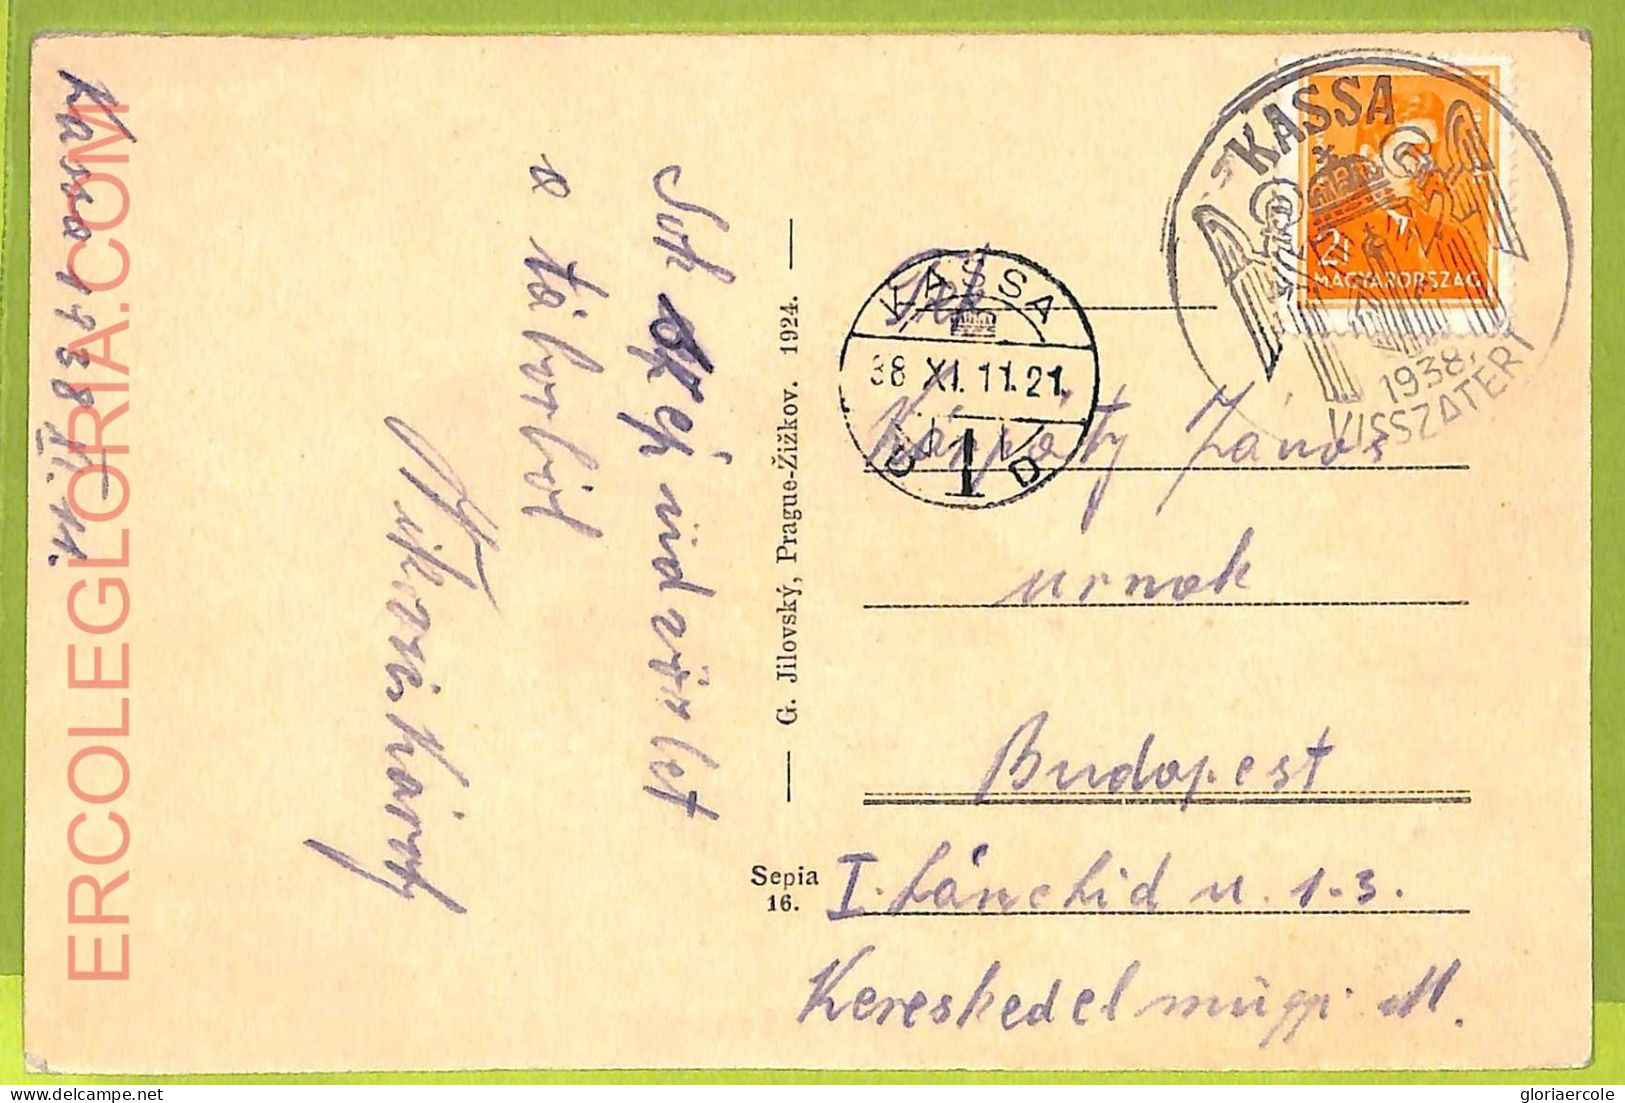 Ae9028 - Ansichtskarten   VINTAGE  POSTCARD - SLOVAKIA - Kosice - 1938 - Slowakei